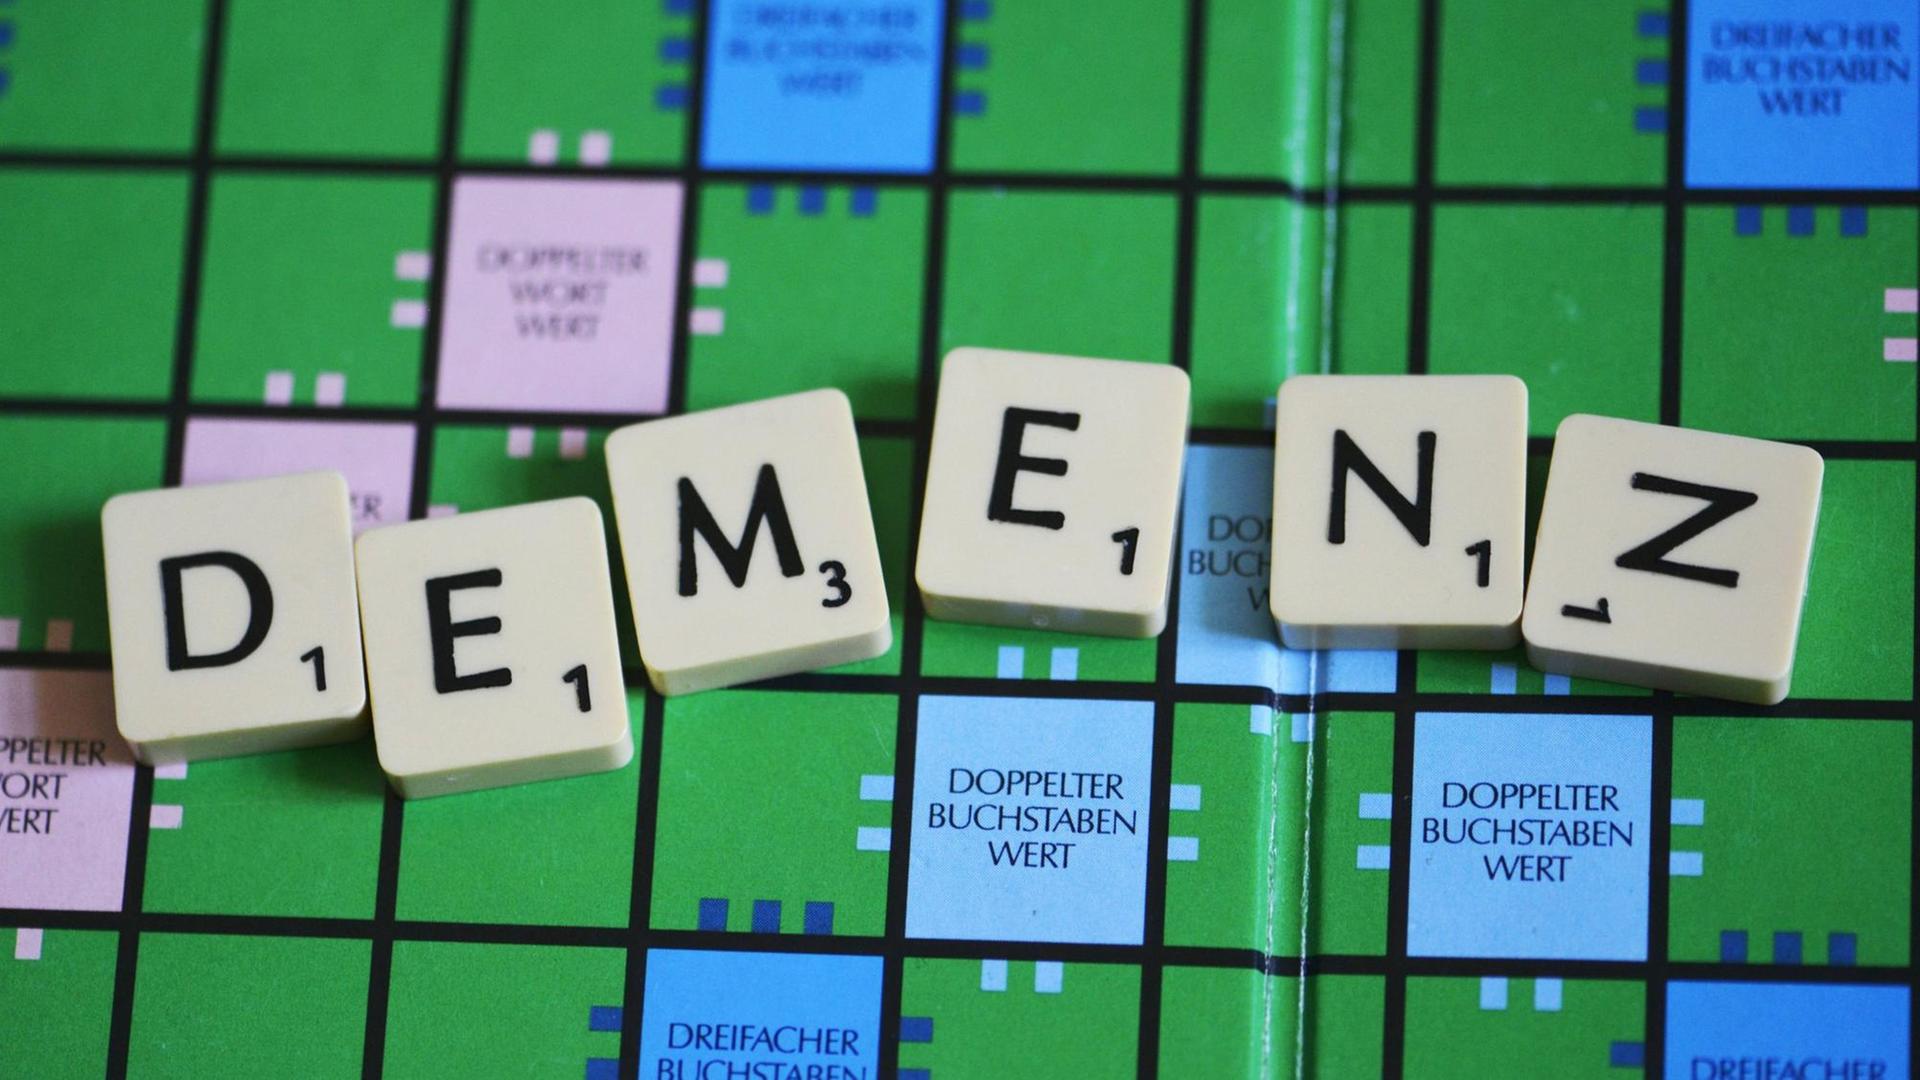 Demenz geschrieben auf einem Scrabble Brett mit Buchstabensteinen